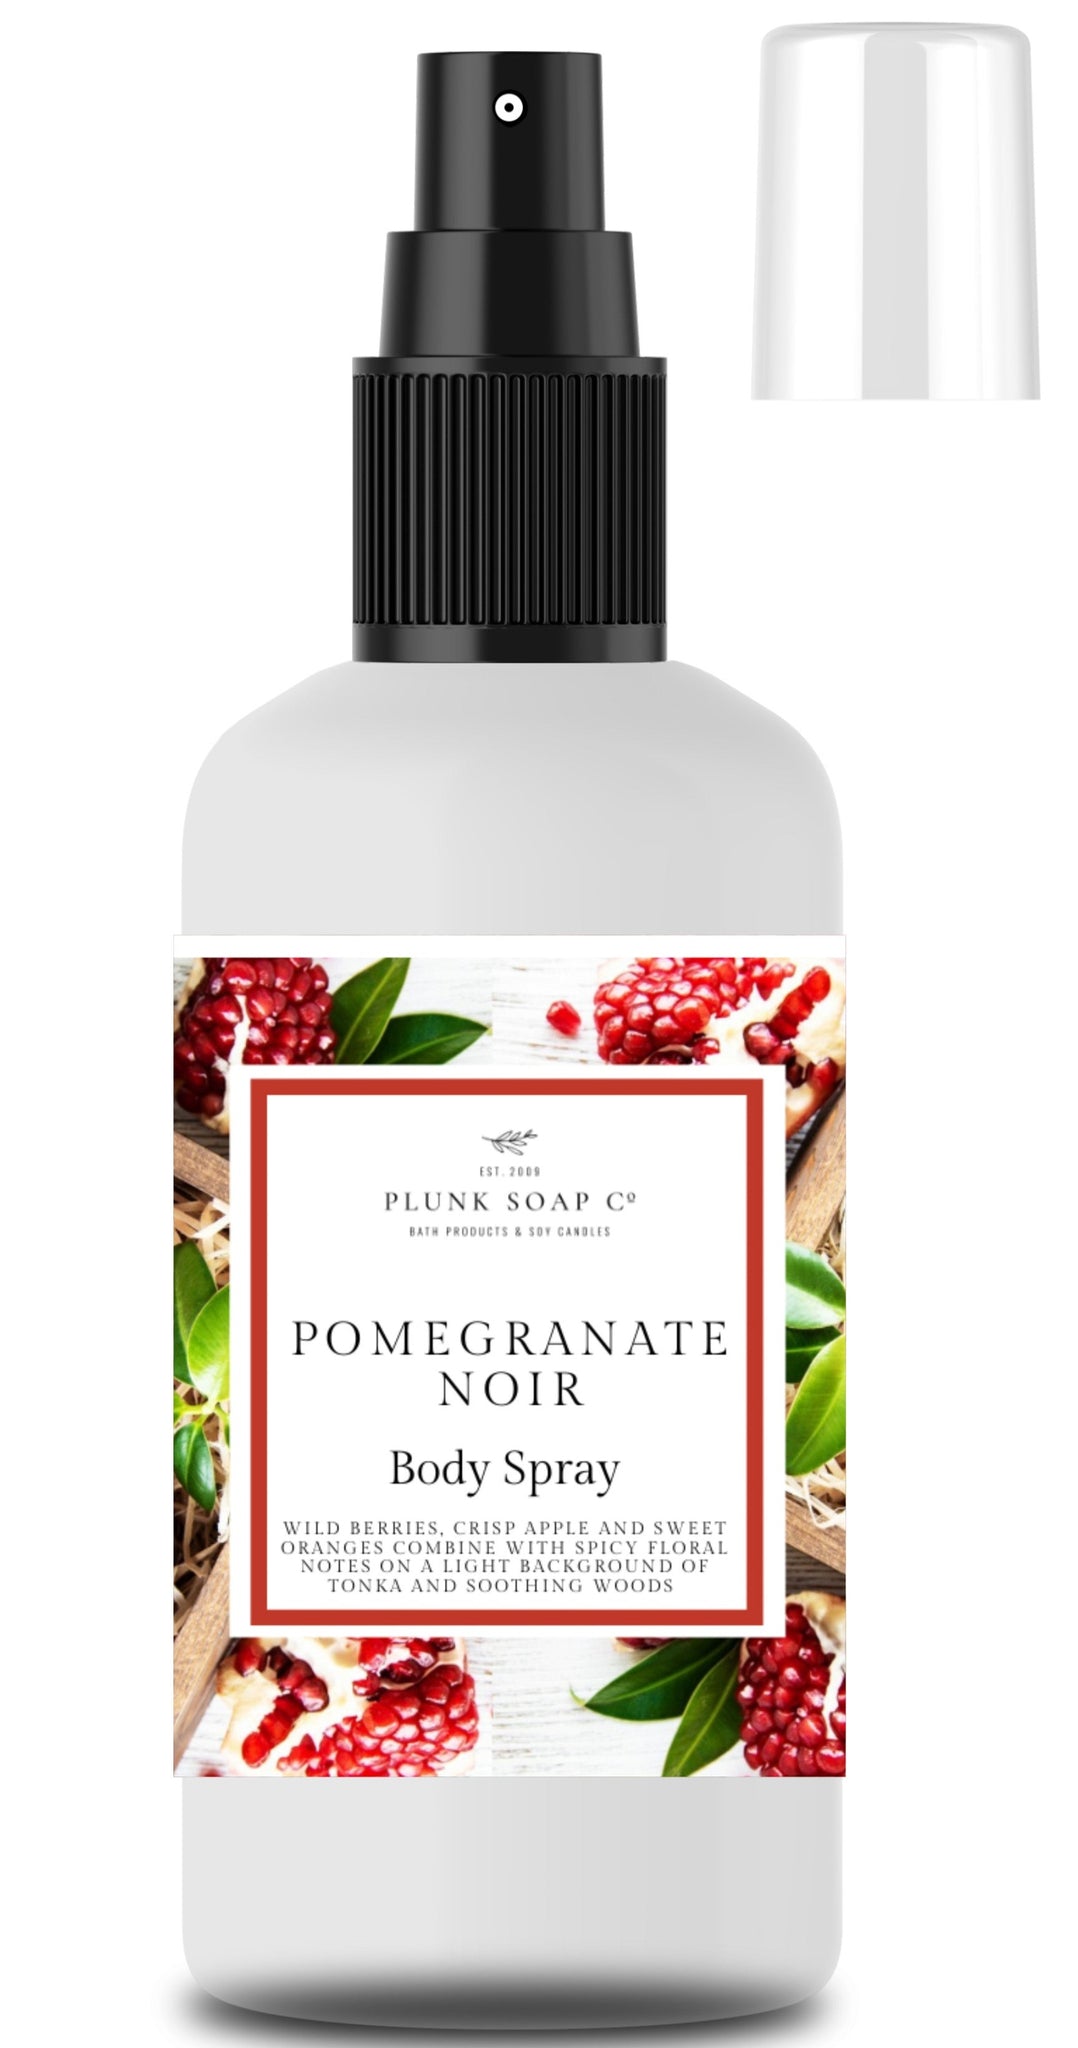 Pomegranate Noir Body Spray